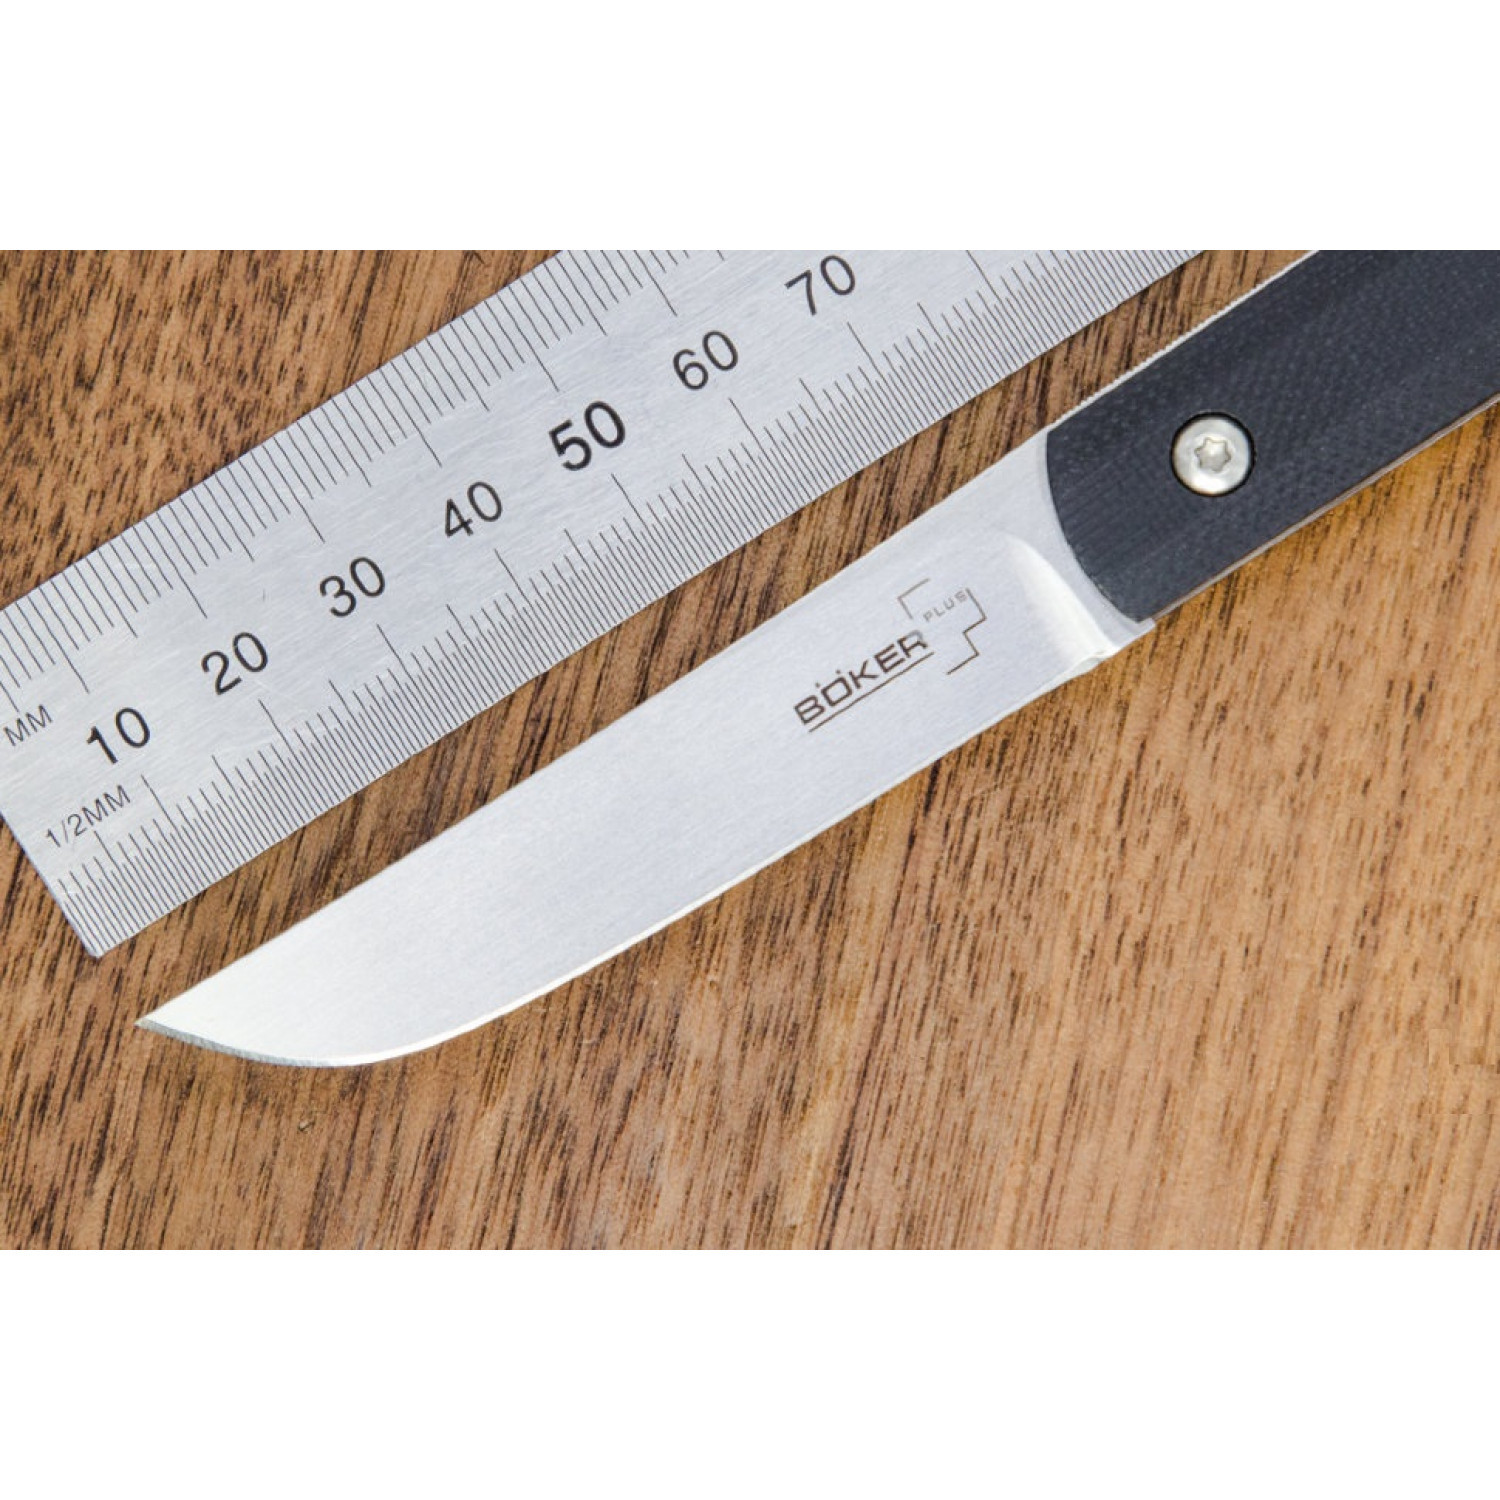 Складной нож Wasabi G10 - Boker Plus 01BO630, лезвие сталь 440C Satin, рукоять стеклотекстолит G-10, чёрный - фото 2